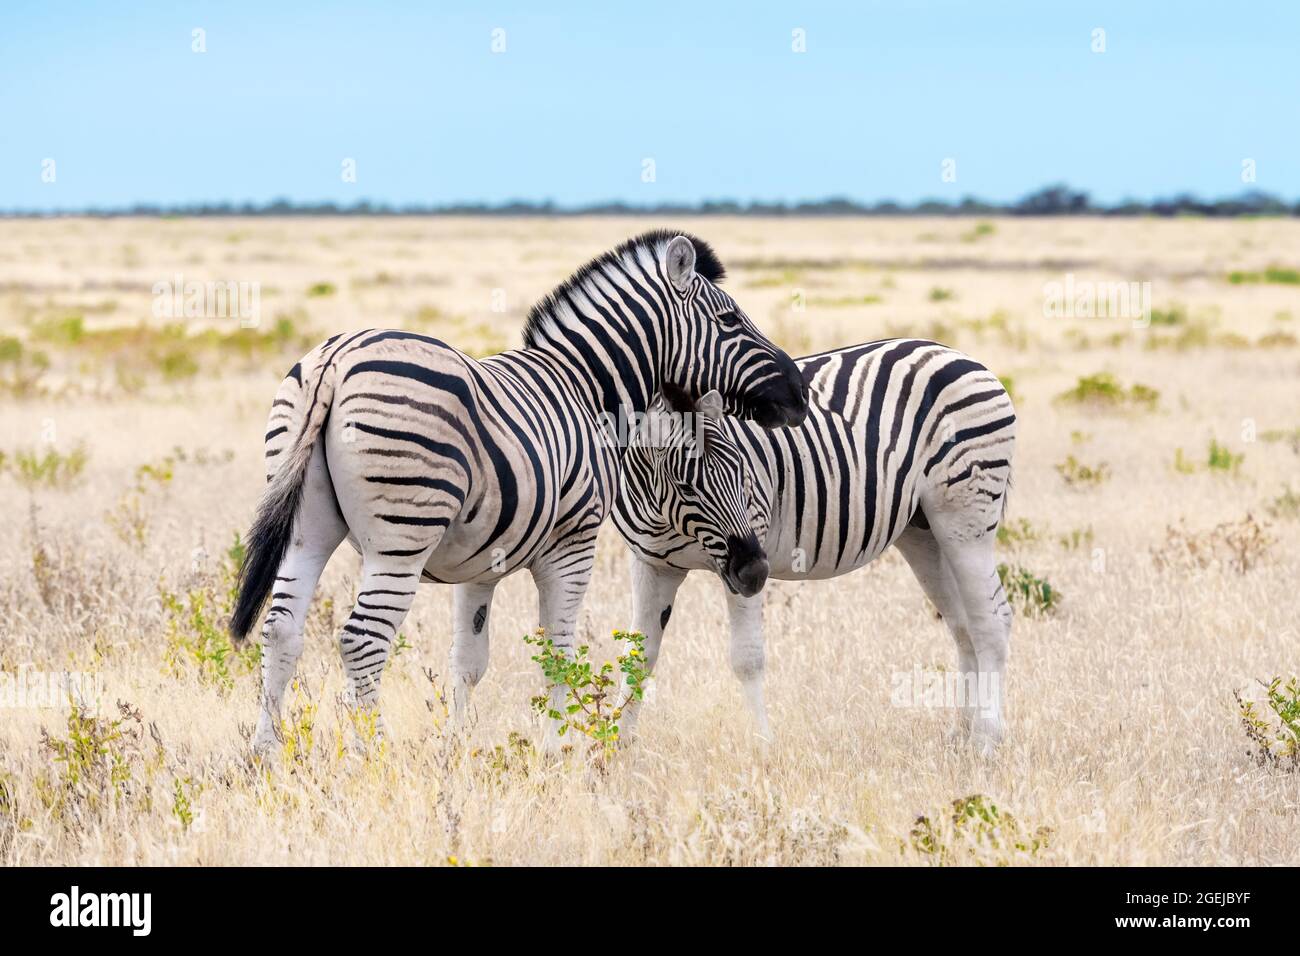 Afrikanische Ebenen Zebrafamilie auf der trockenen braunen Savanne Grasland Browsen und Weiden. Wildtierfotografie Stockfoto